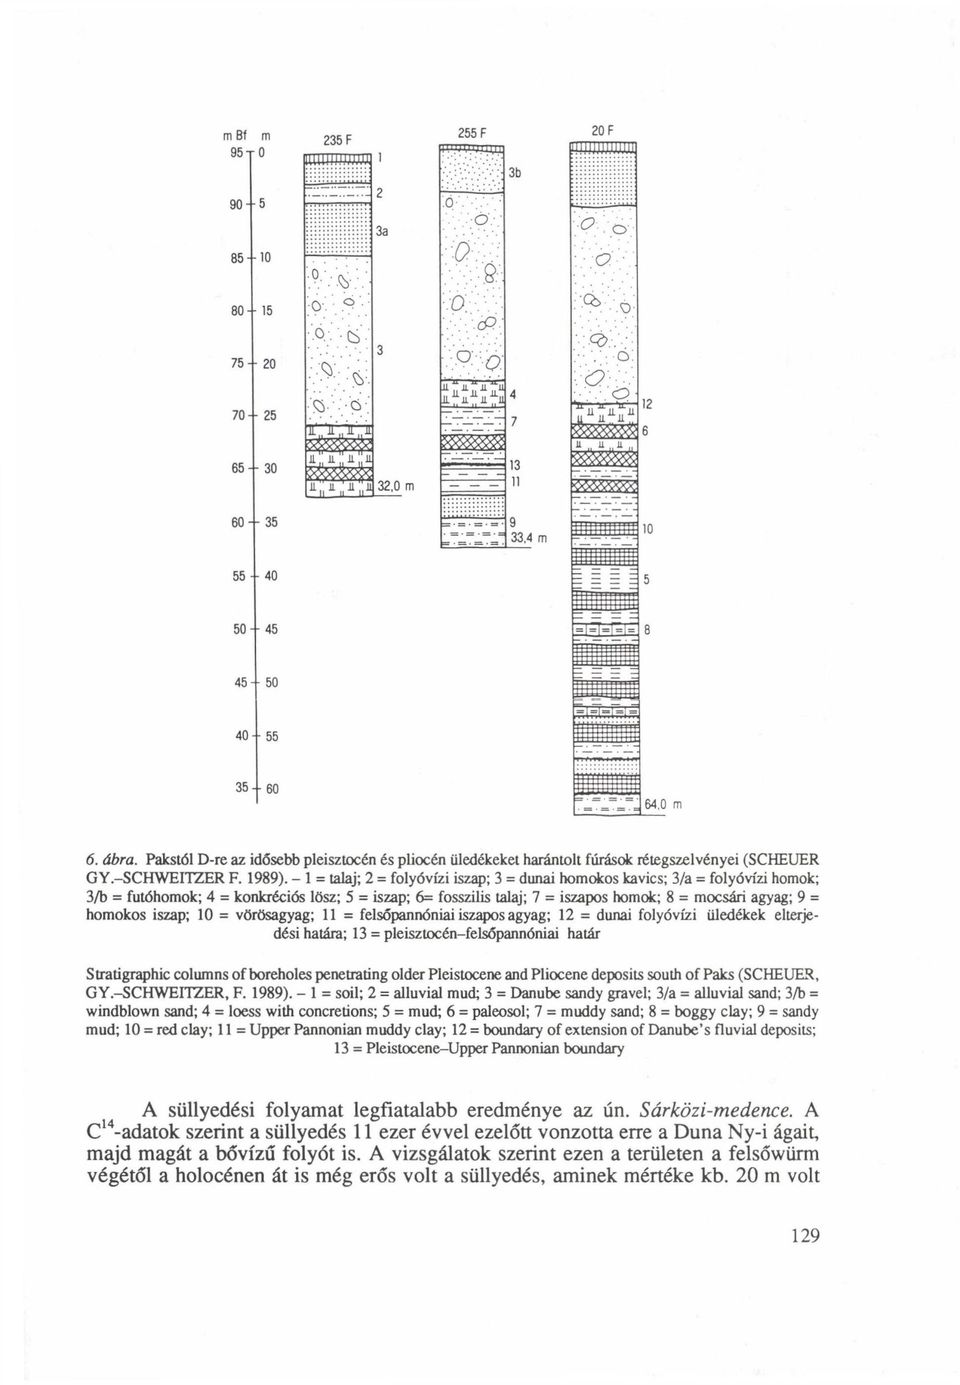 Pakstól D-re az idősebb pleisztocén és pliocén üledékeket harántolt fúrások rétegszelvényei (SCHEUER GY.-SCHWEITZER F. 1989).